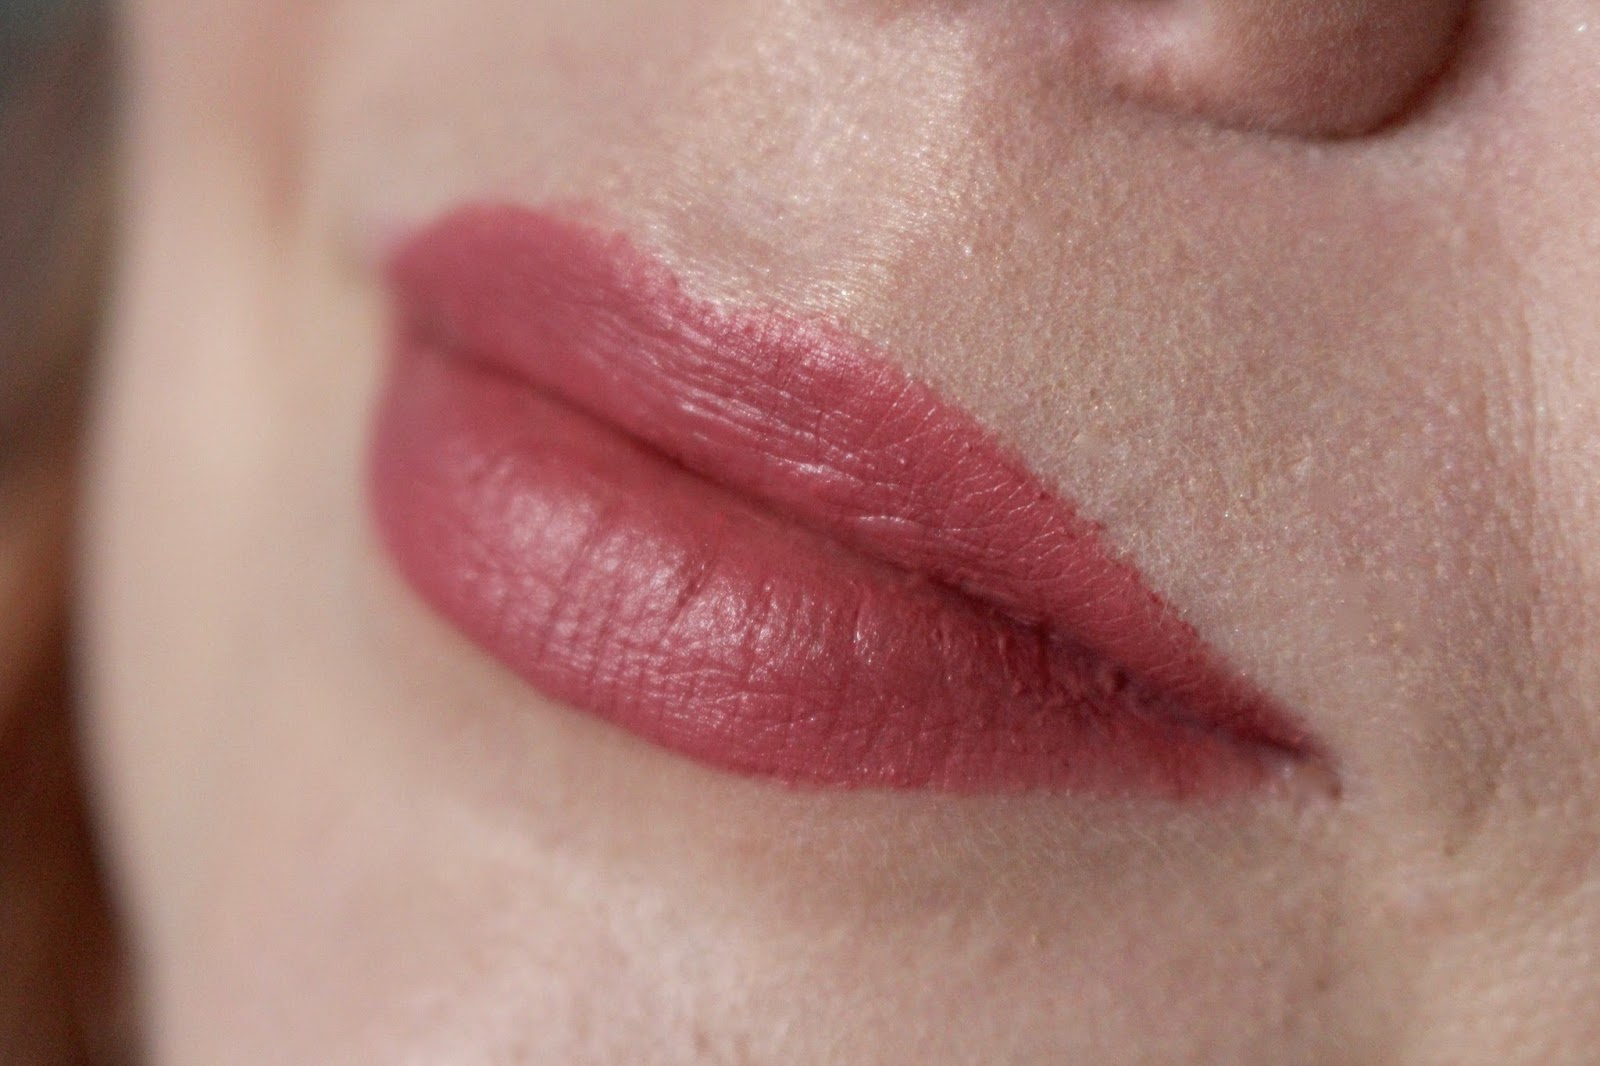 chanel rouge allure velvet lipstick 34